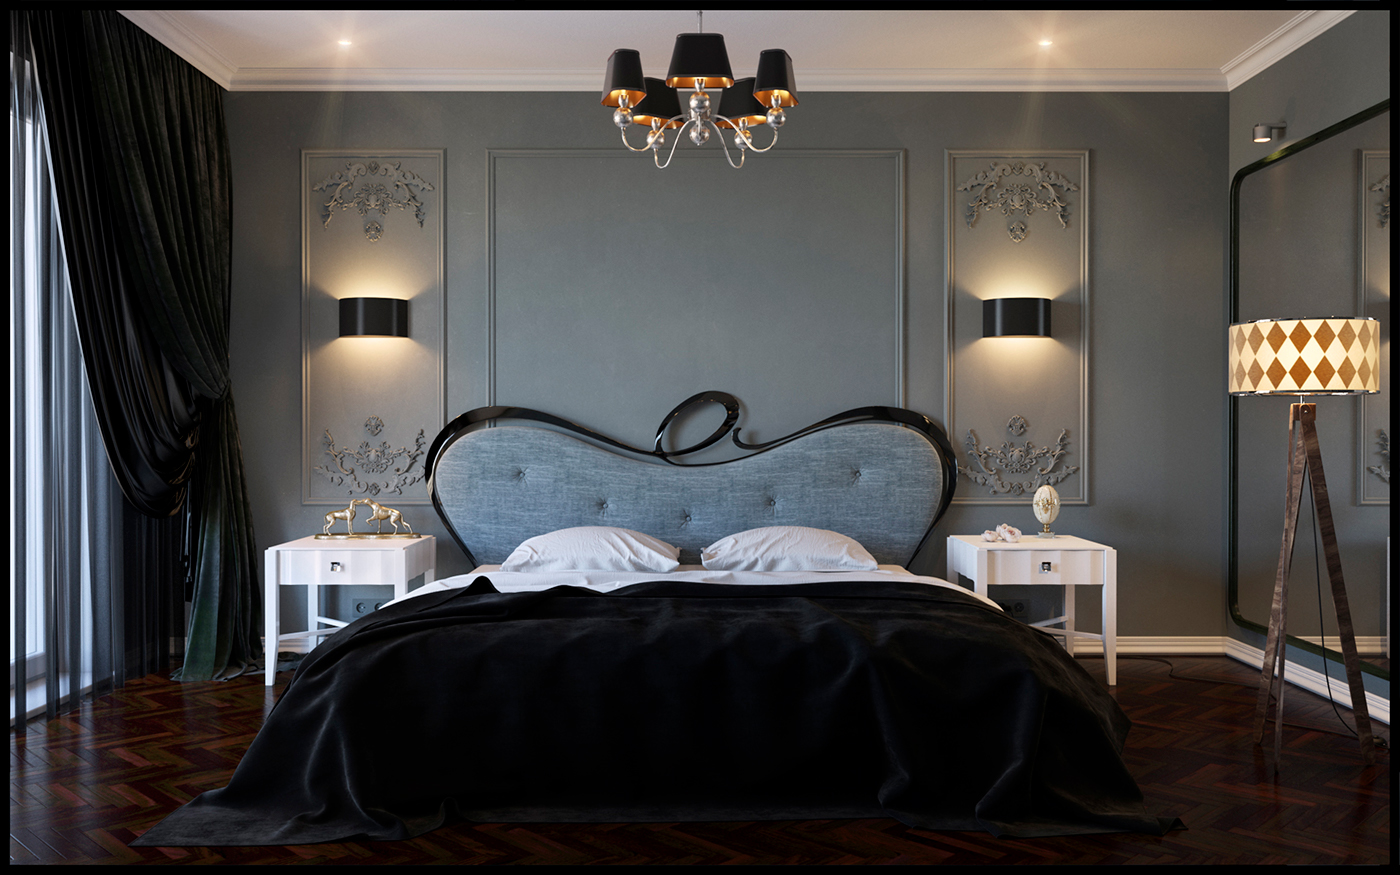 Art-deco bedroom on Behance